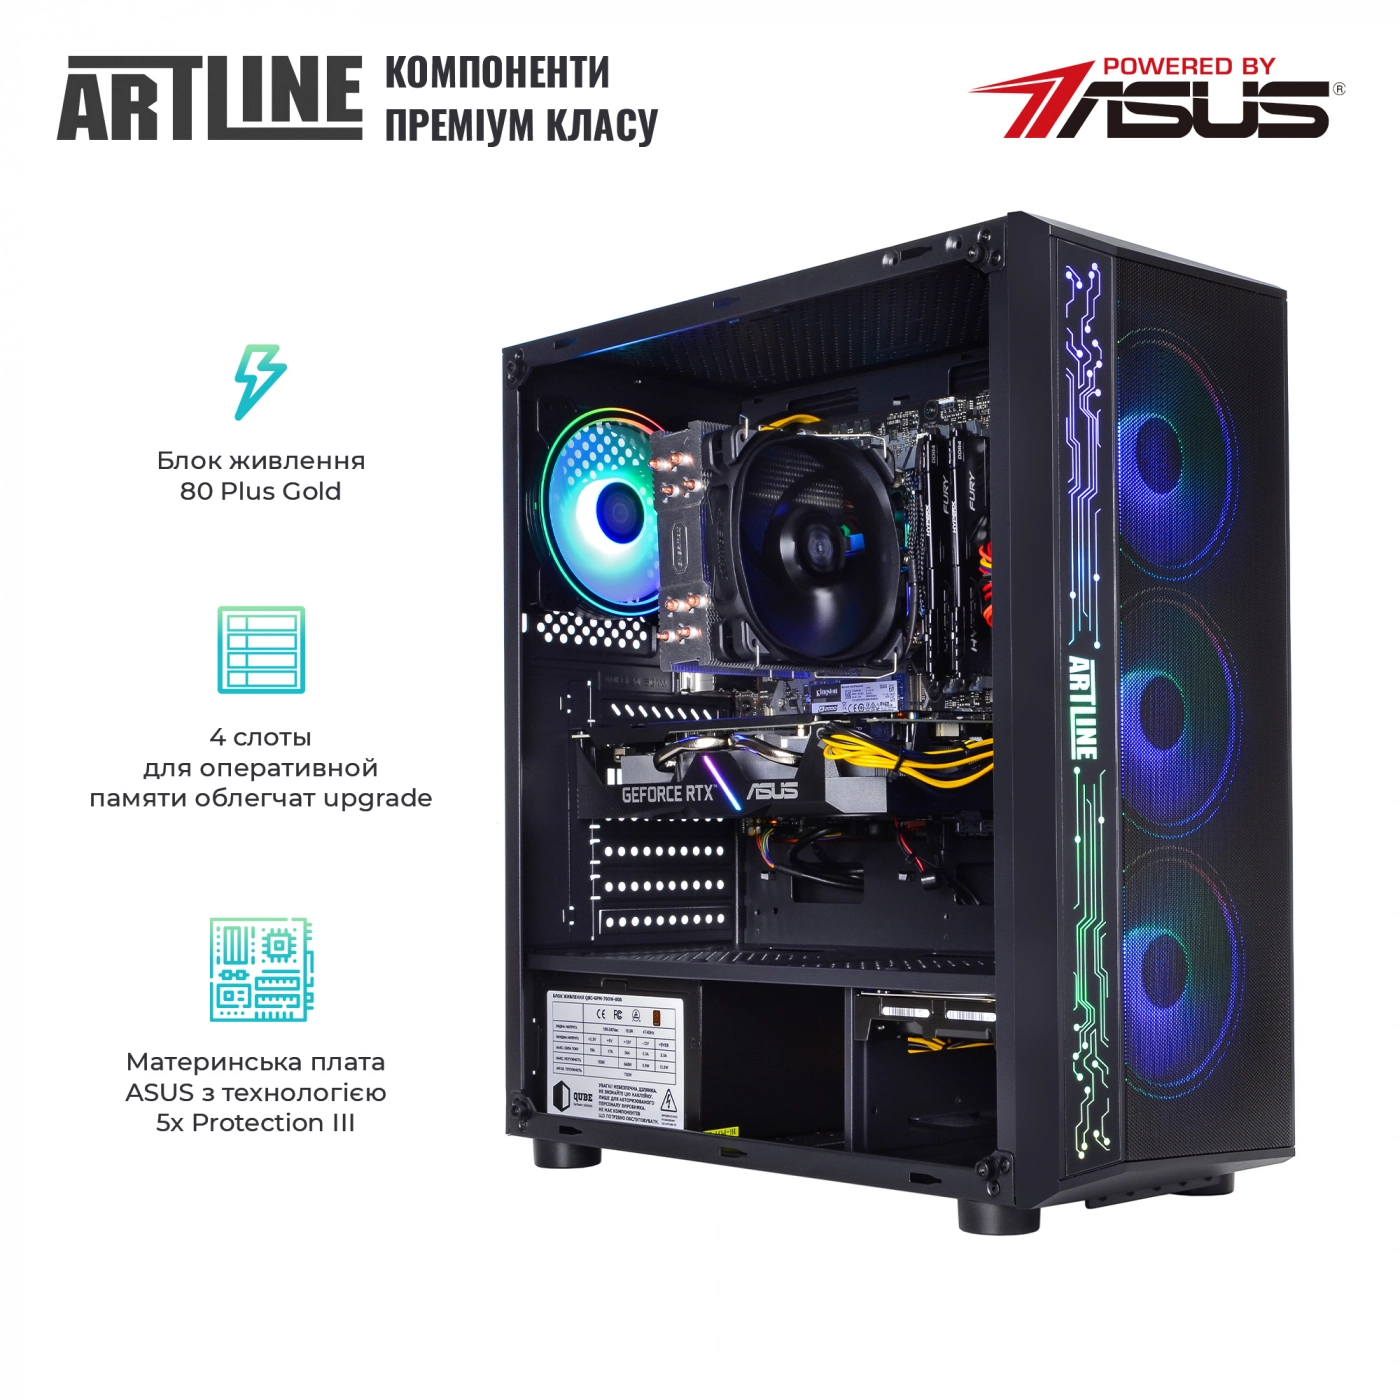 Купить Компьютер ARTLINE Gaming X75v17 - фото 2